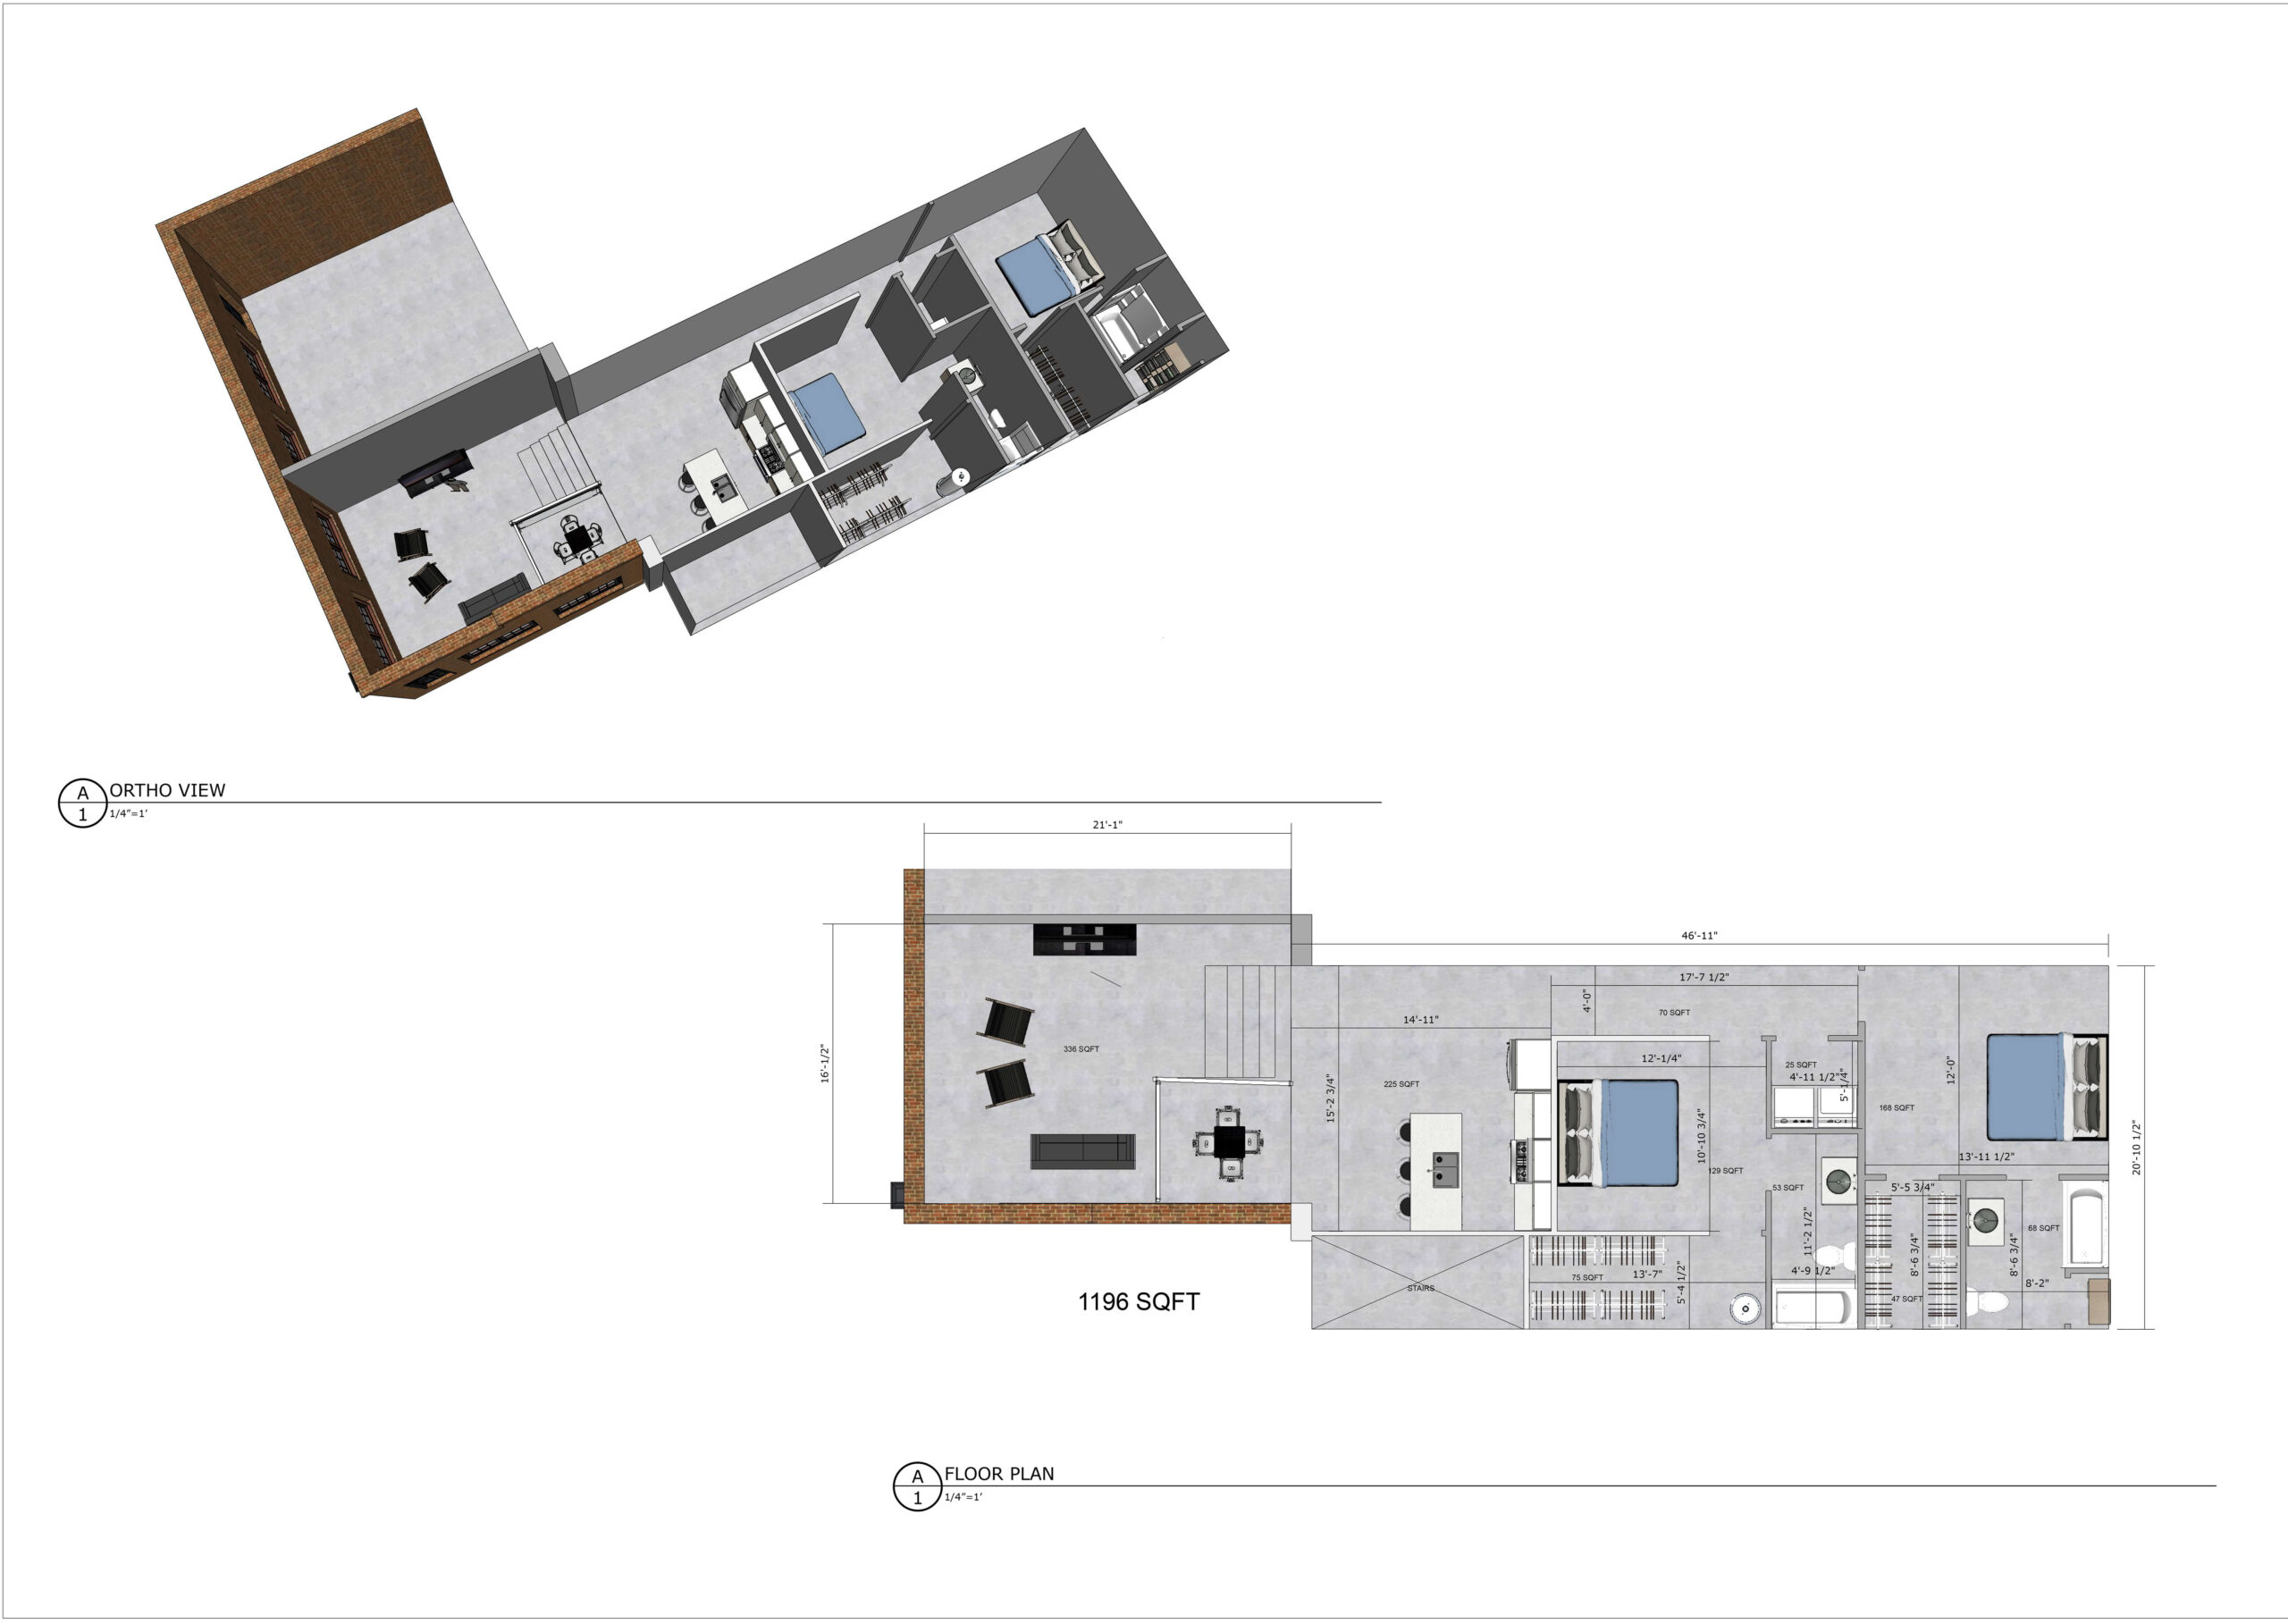 loft105-1196sqft-orthoview-floorplan